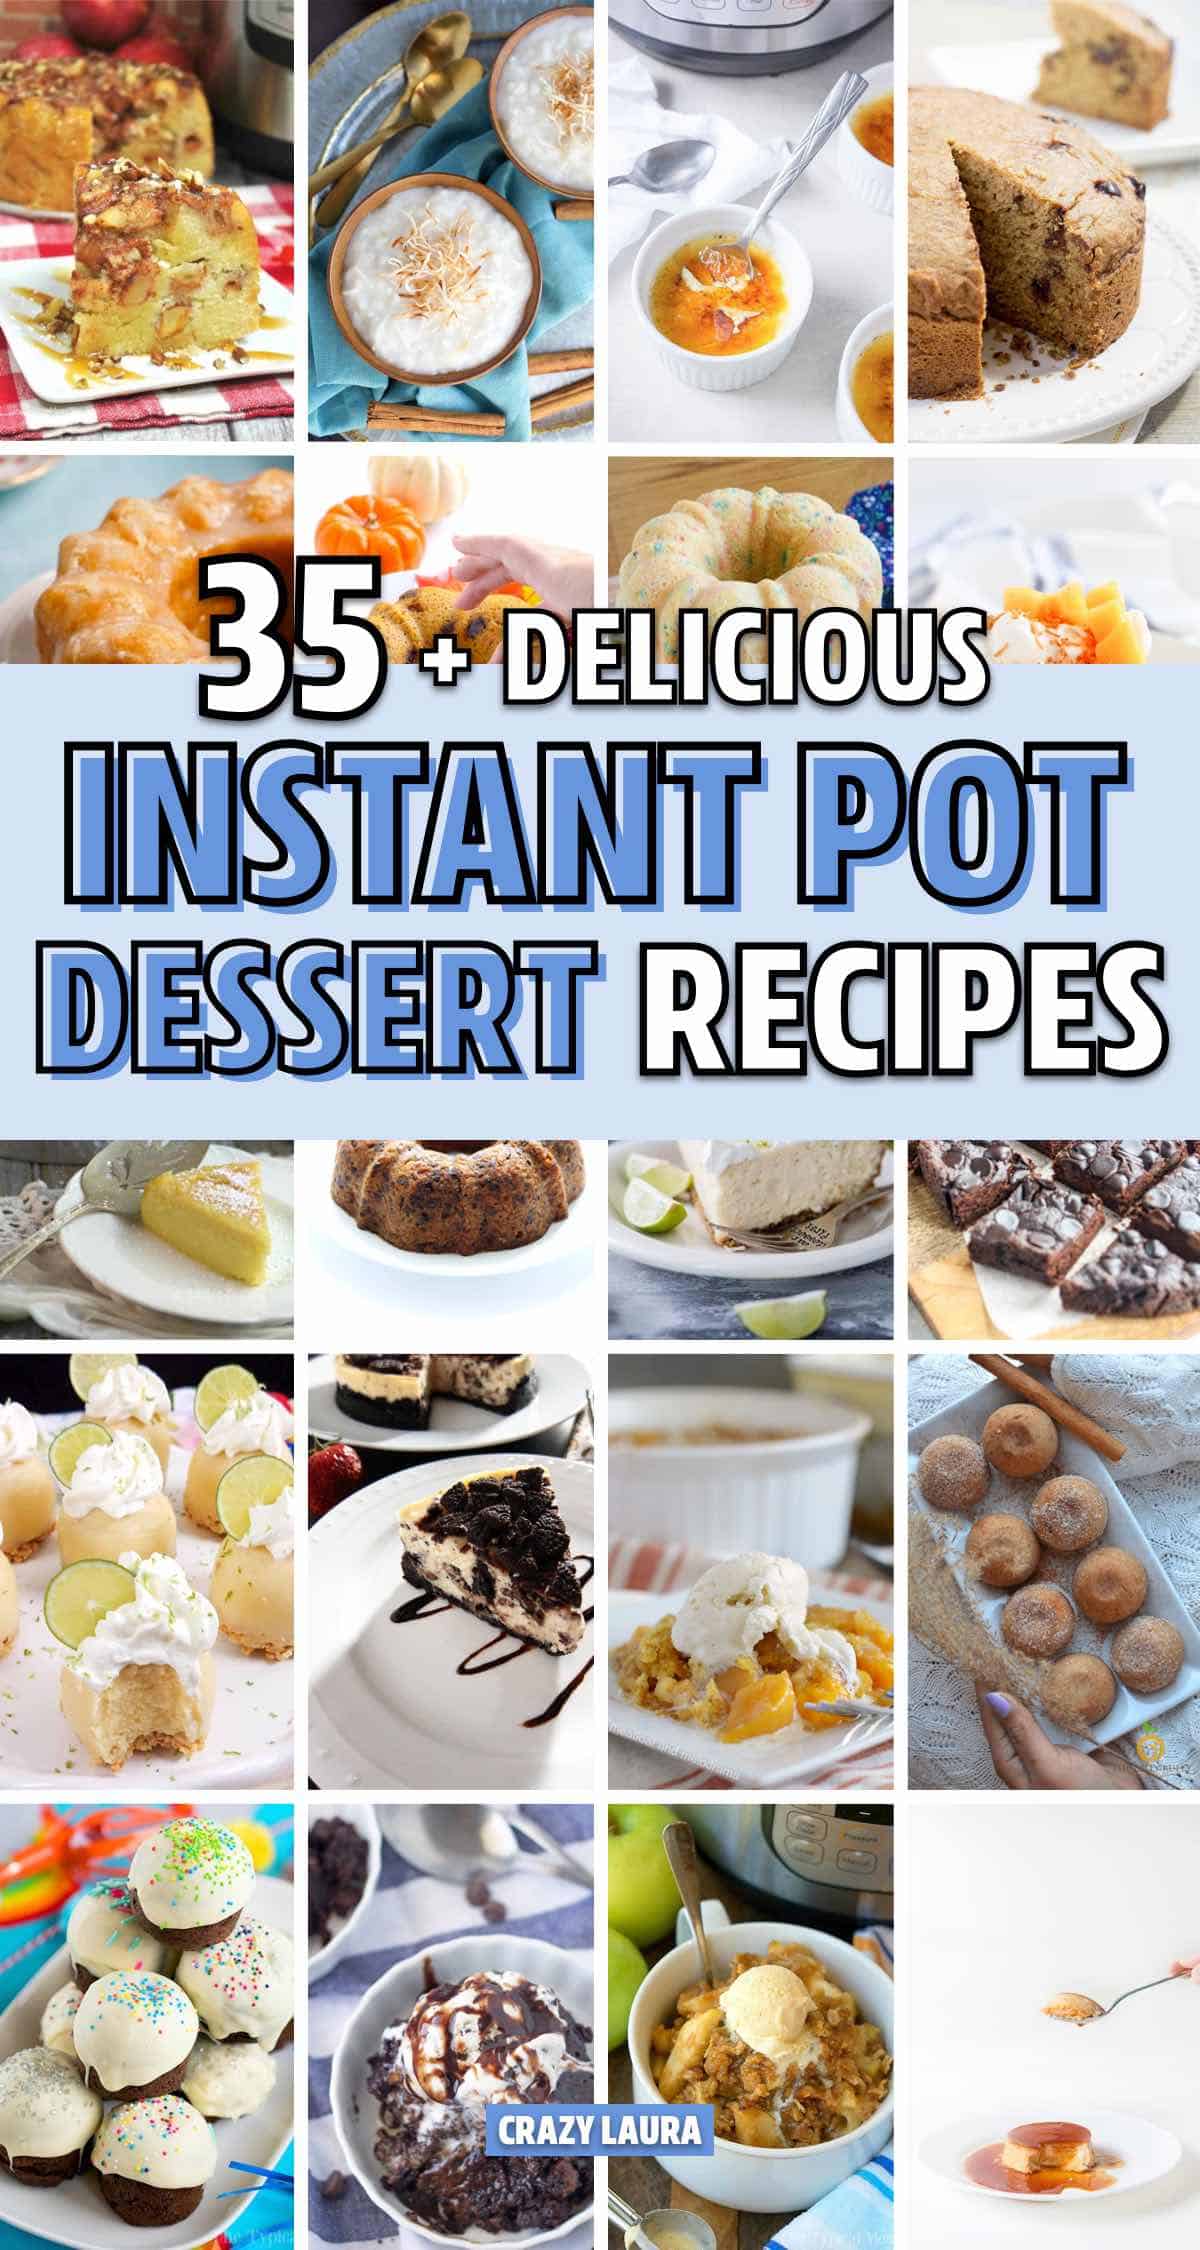 quick dessert recipe for instant pot